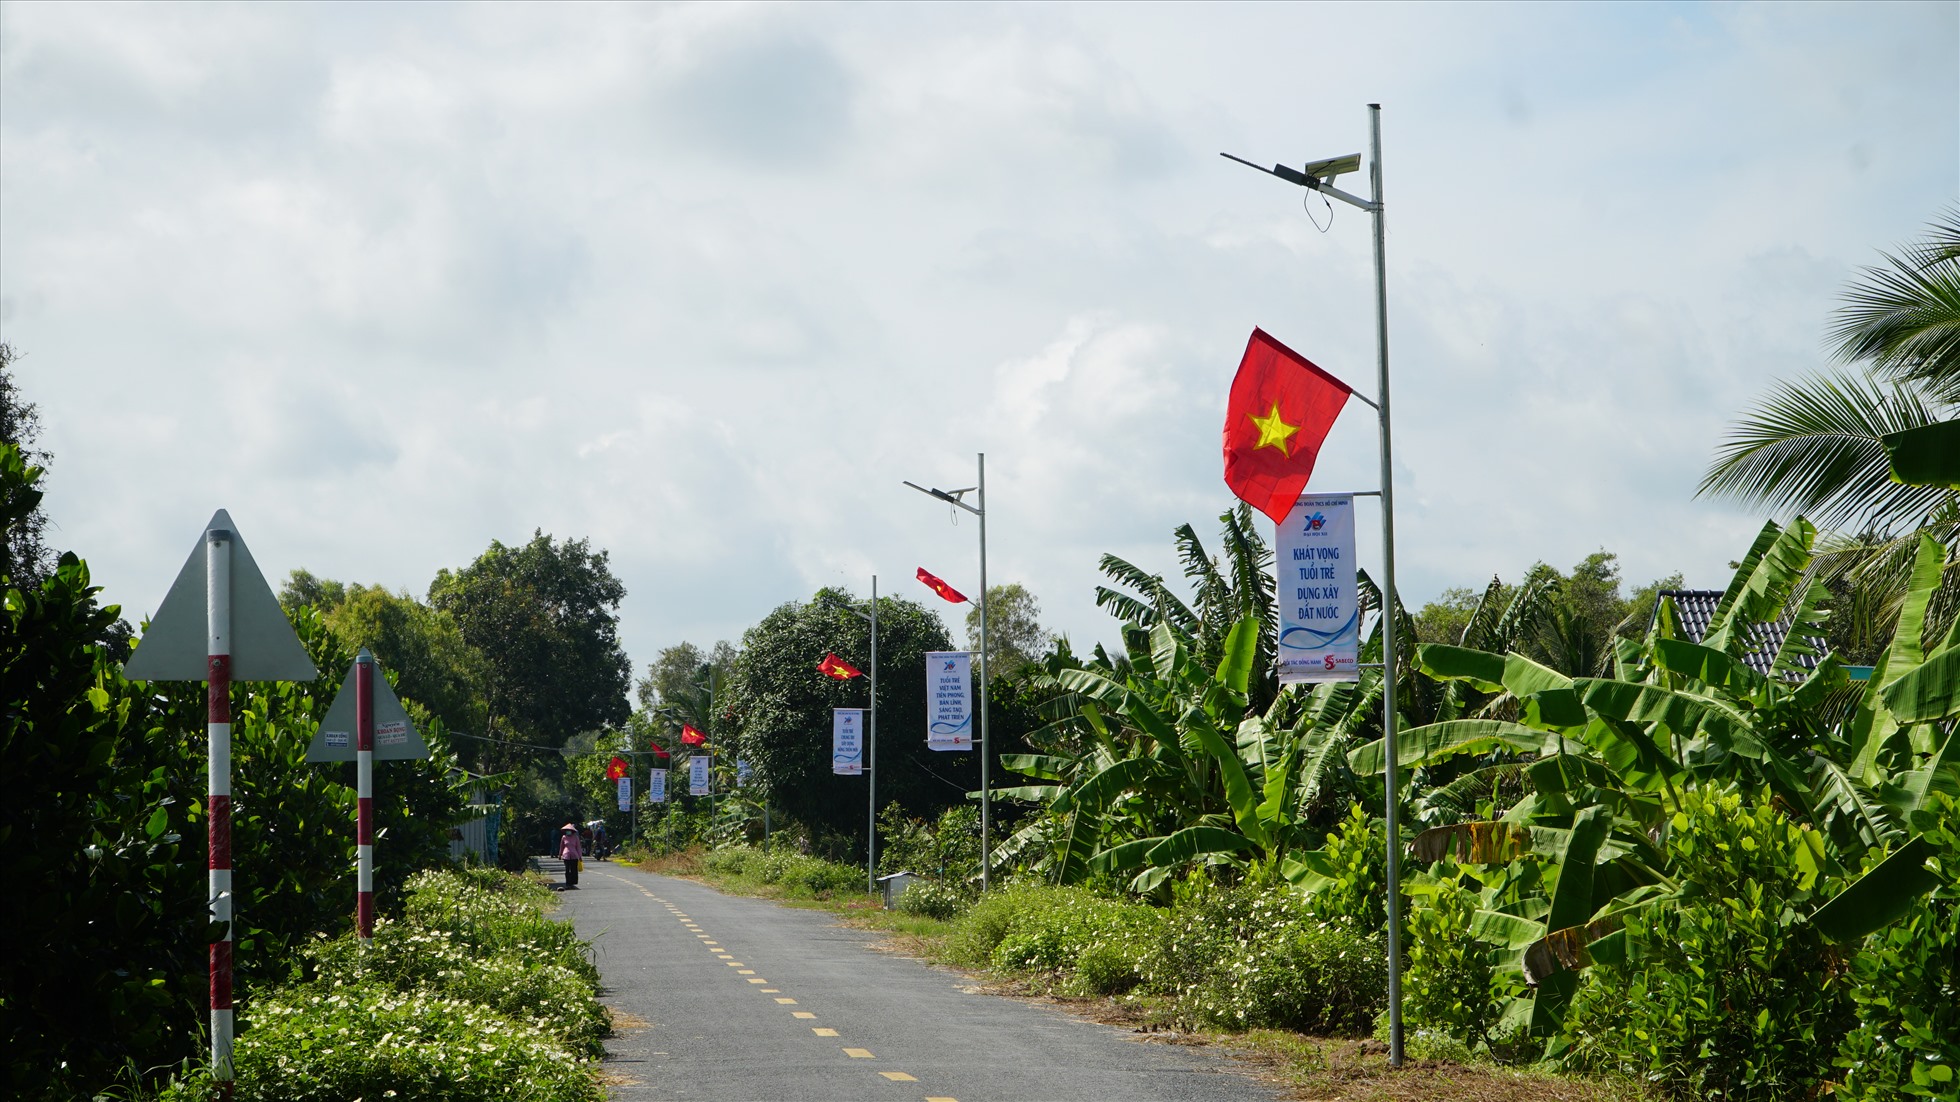 Đoạn đường dài 1 km tại xã Tân Kiều, huyện Tháp Mười, Đồng Tháp được thắp sáng nhờ hệ thống đèn năng lượng mặt trời từ sáng kiến Thắp sáng đường quê. Nguồn: SABECO